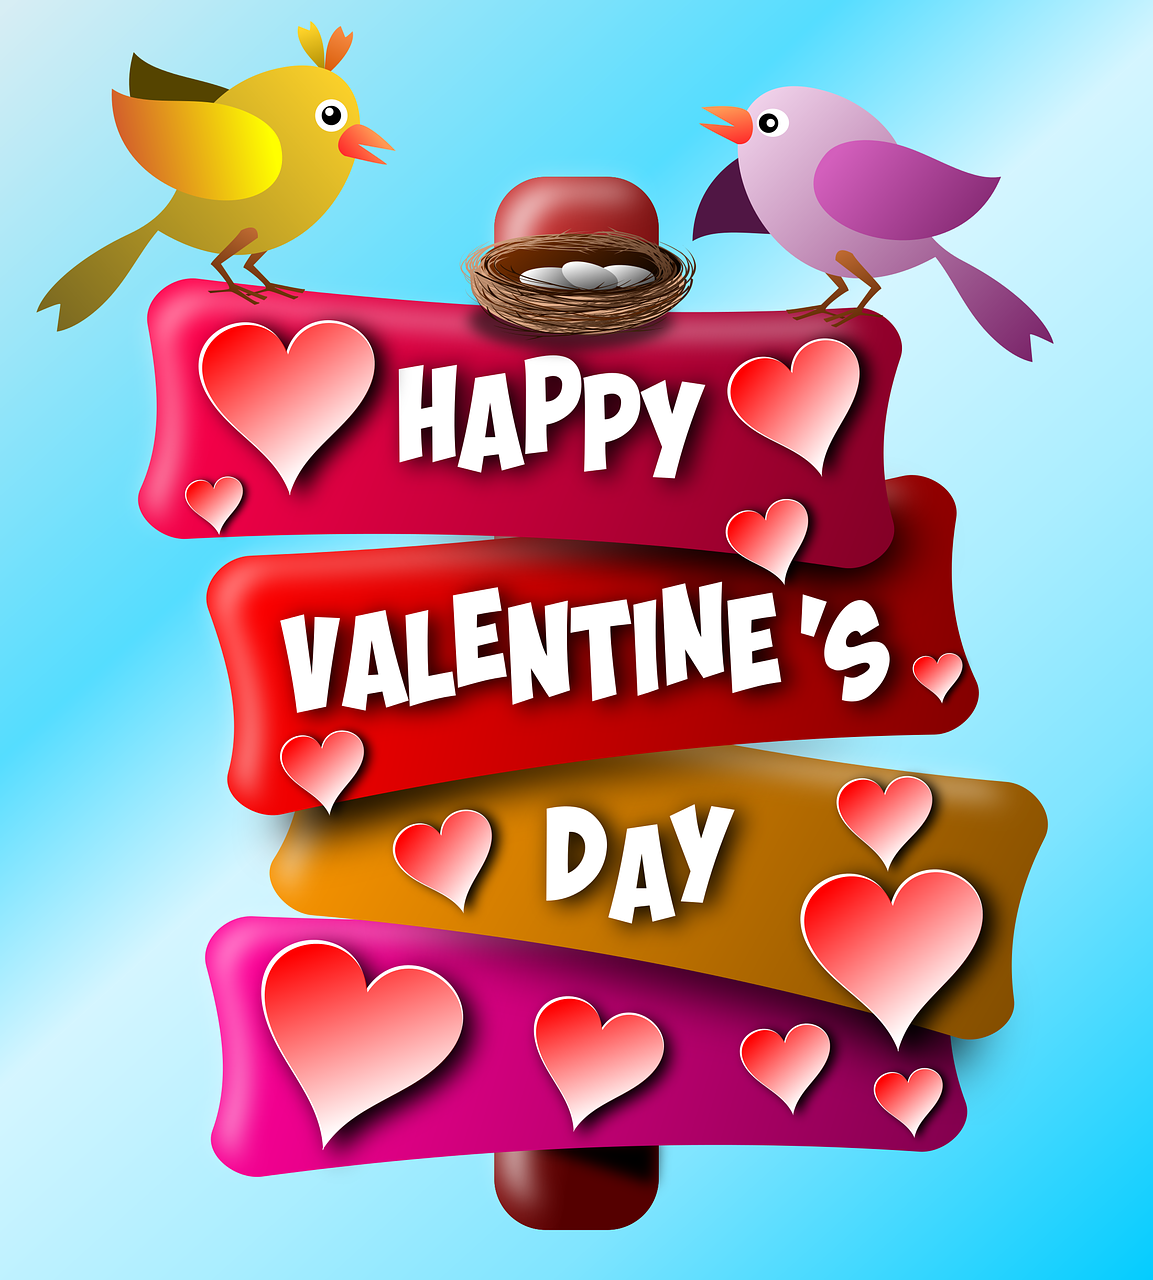 Happy Valentine's Day by Almeida